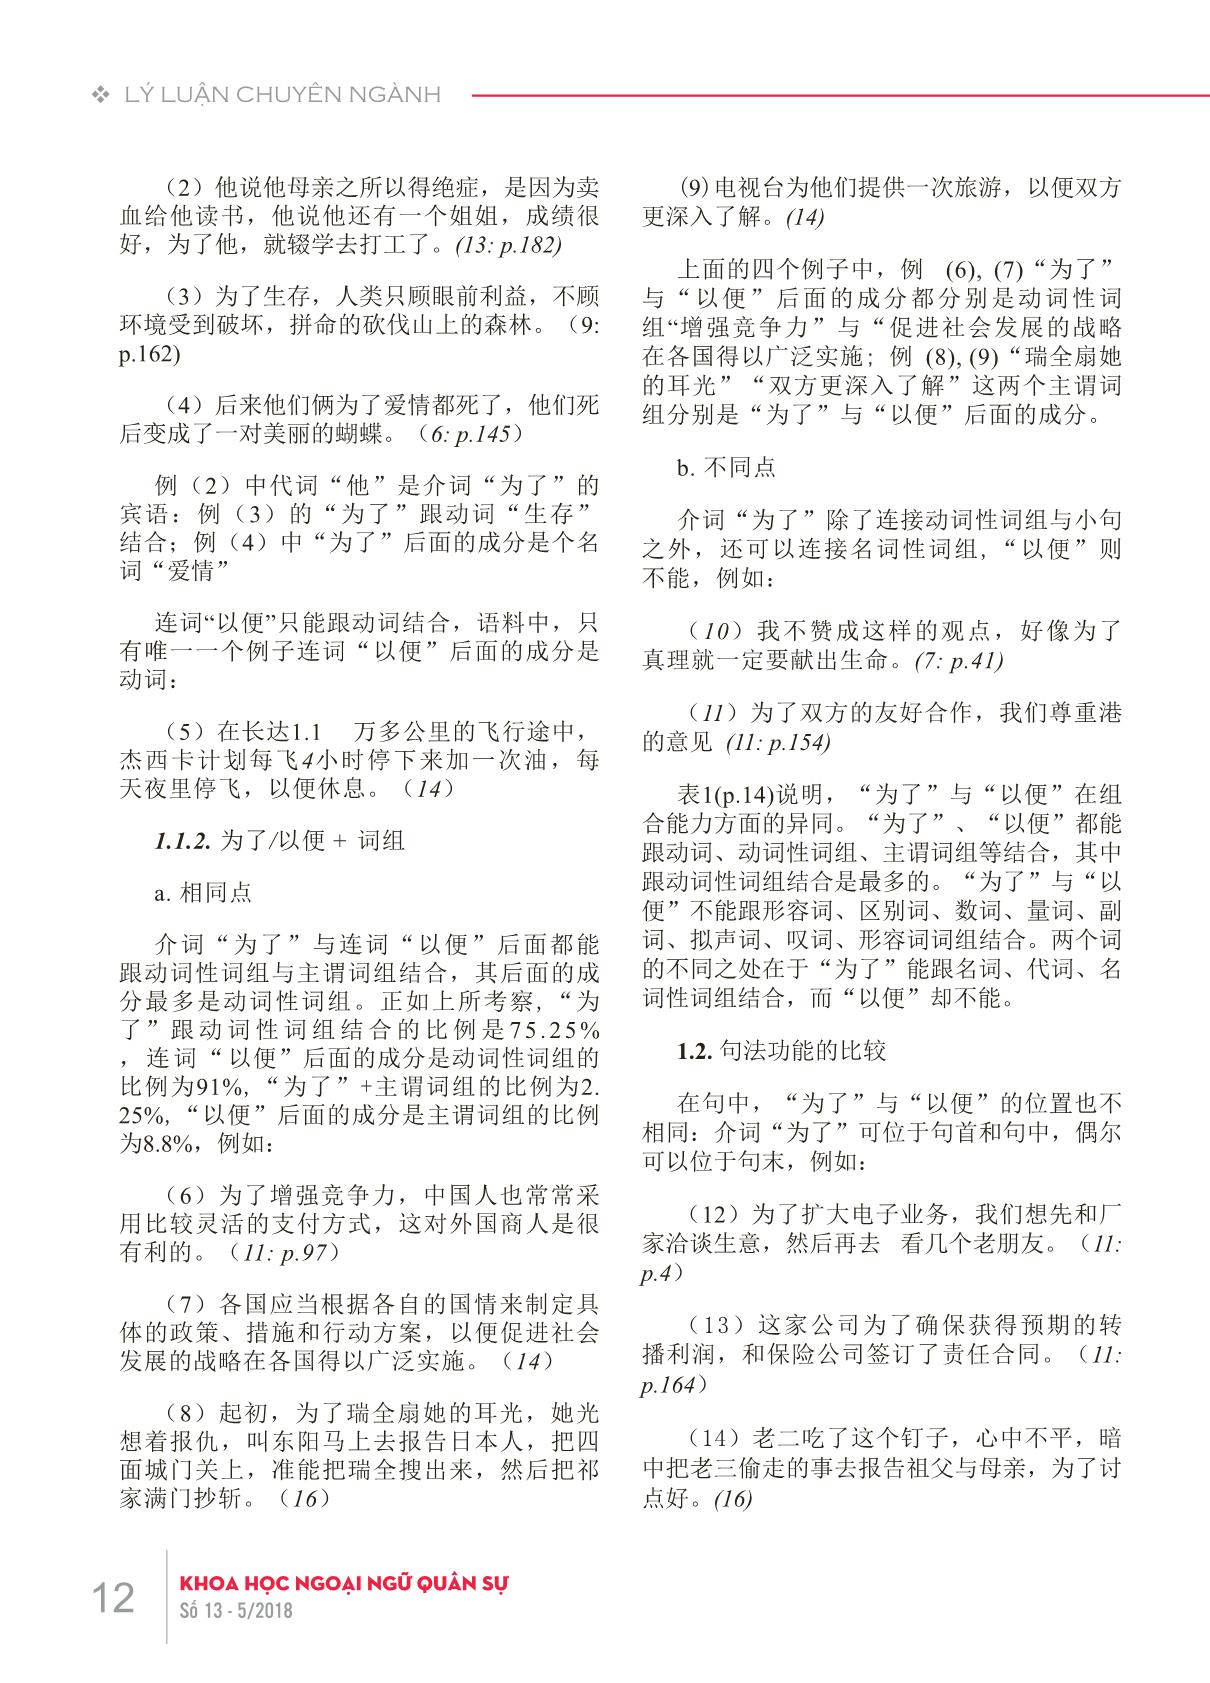 Phân biệt “weile” và “yibian” trong tiếng Hán hiện đại trang 2